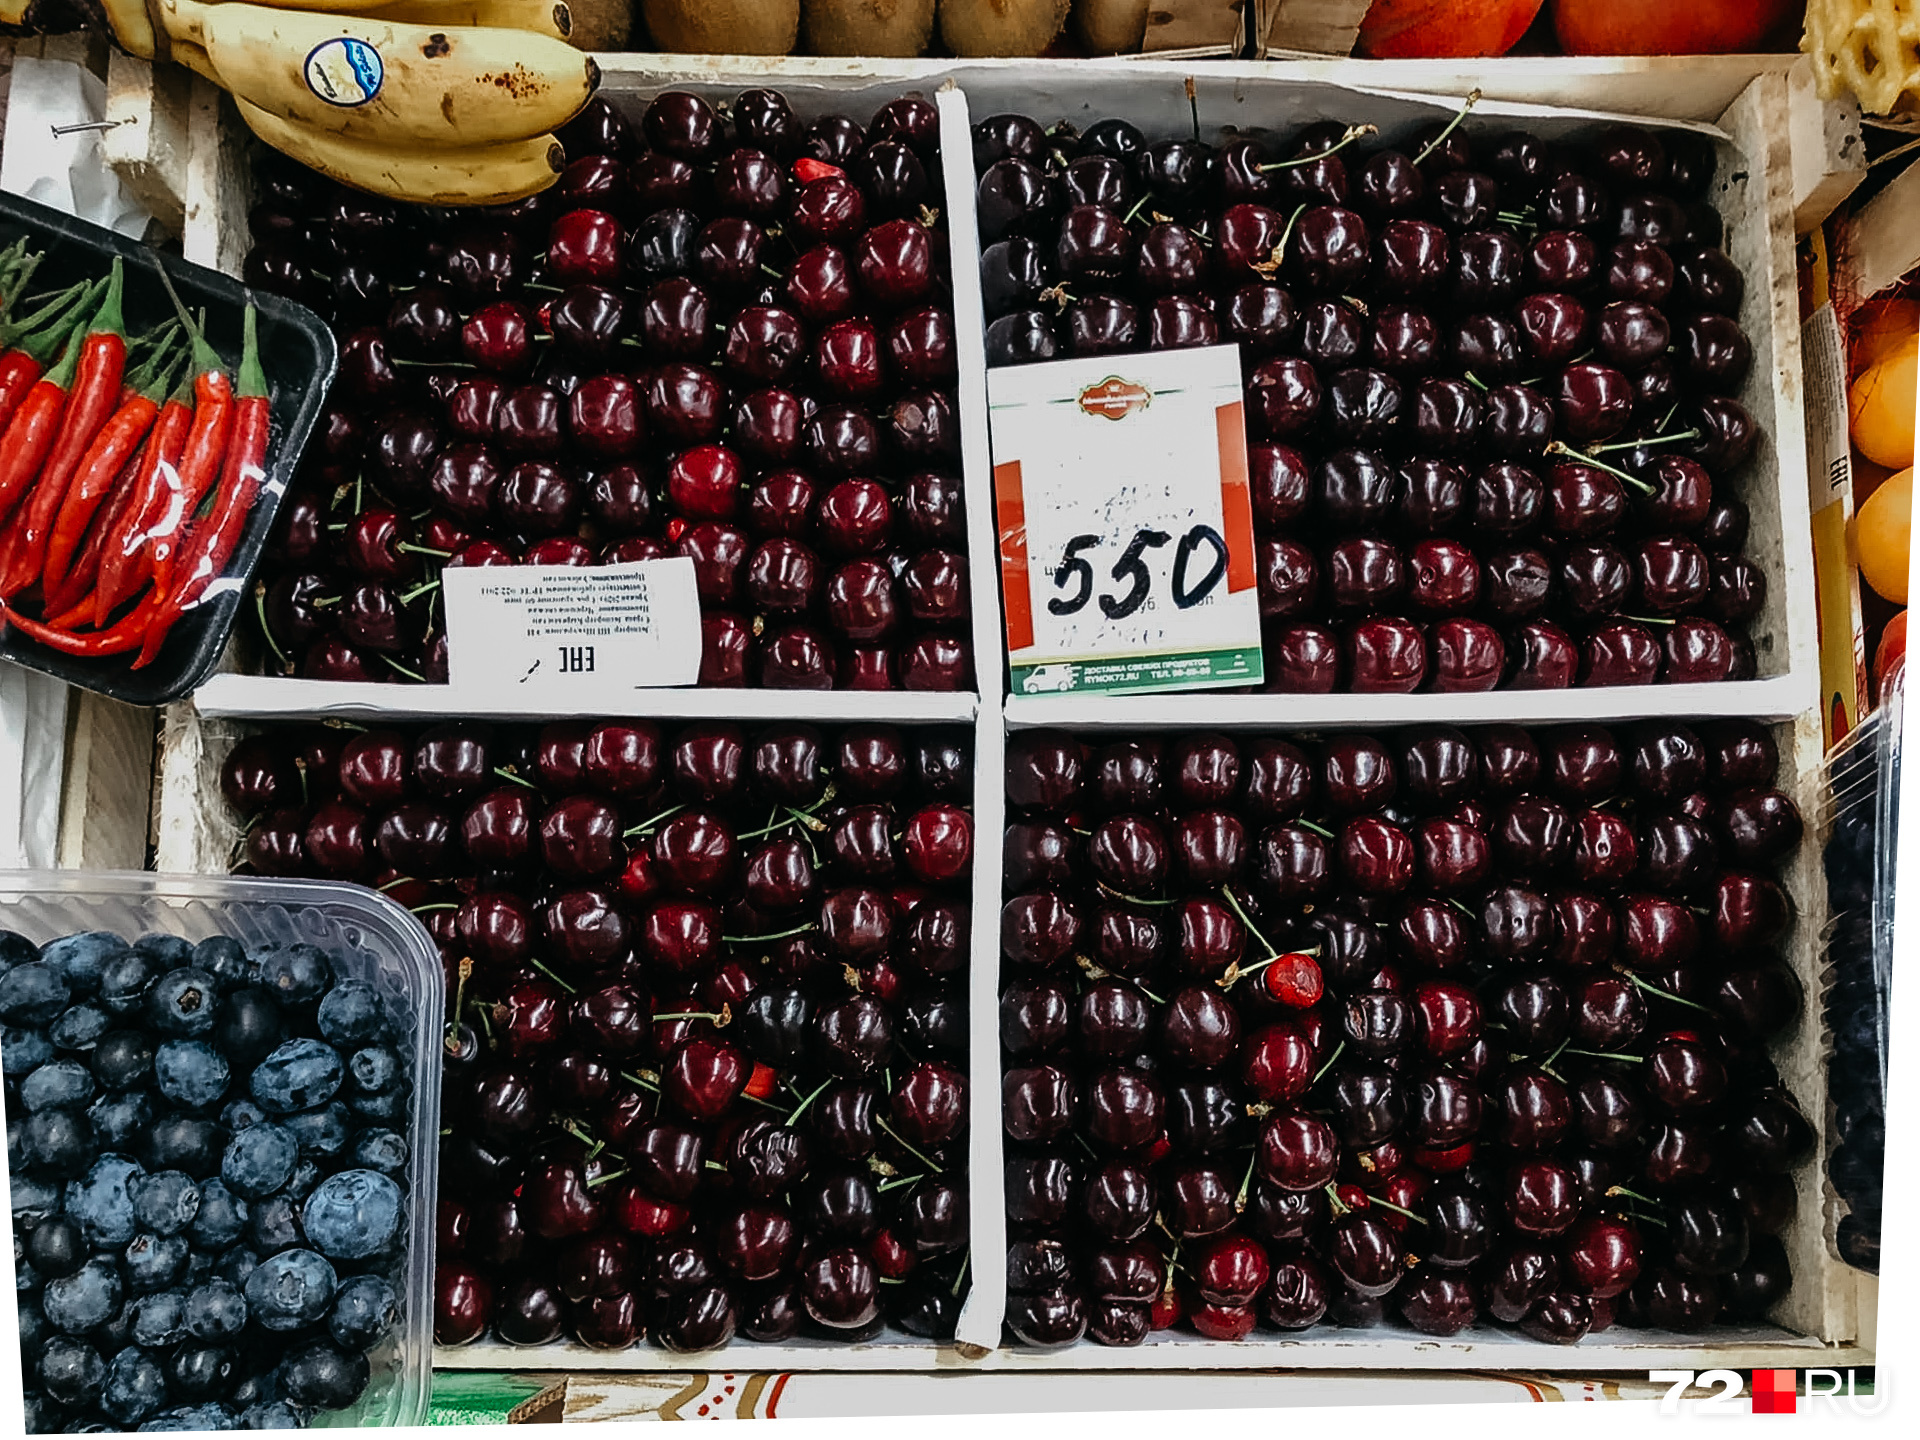 Смотрите, как всё аккуратно: ягодка к ягодке... Красота да и только. Эта черешня из Узбекистана стоит 550 рублей